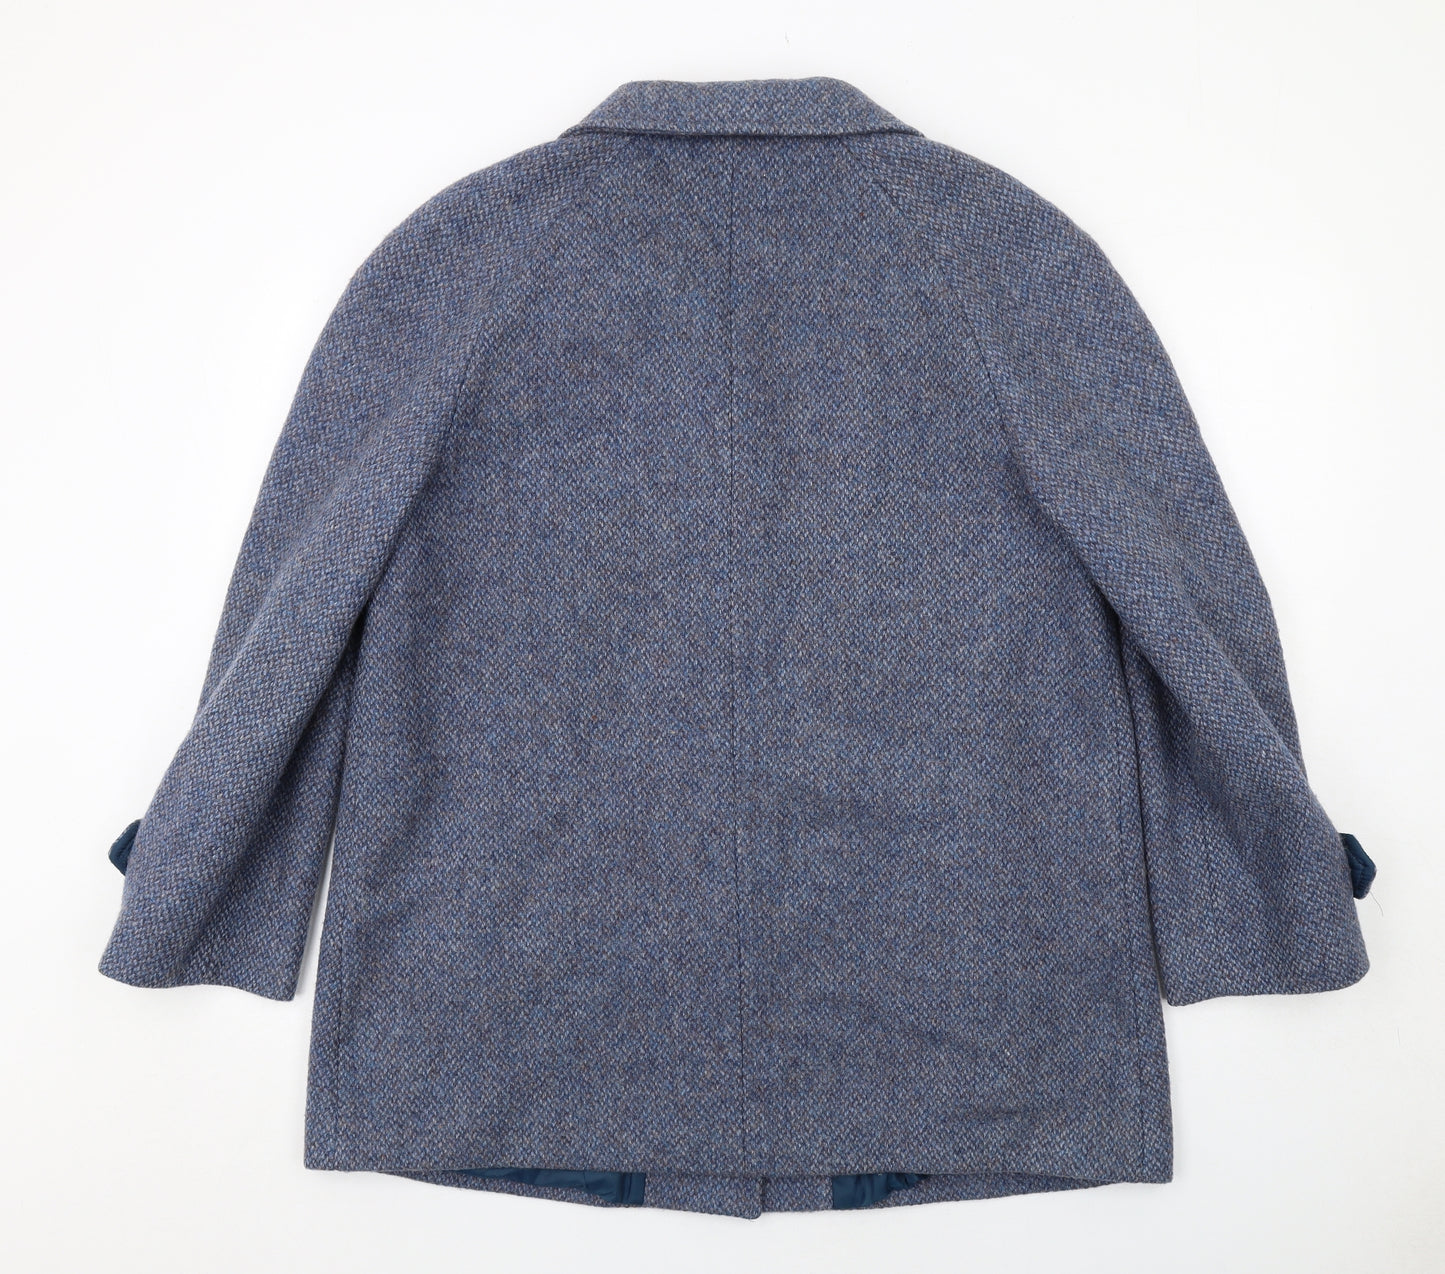 EWM Womens Blue Geometric Jacket Size 18 Button